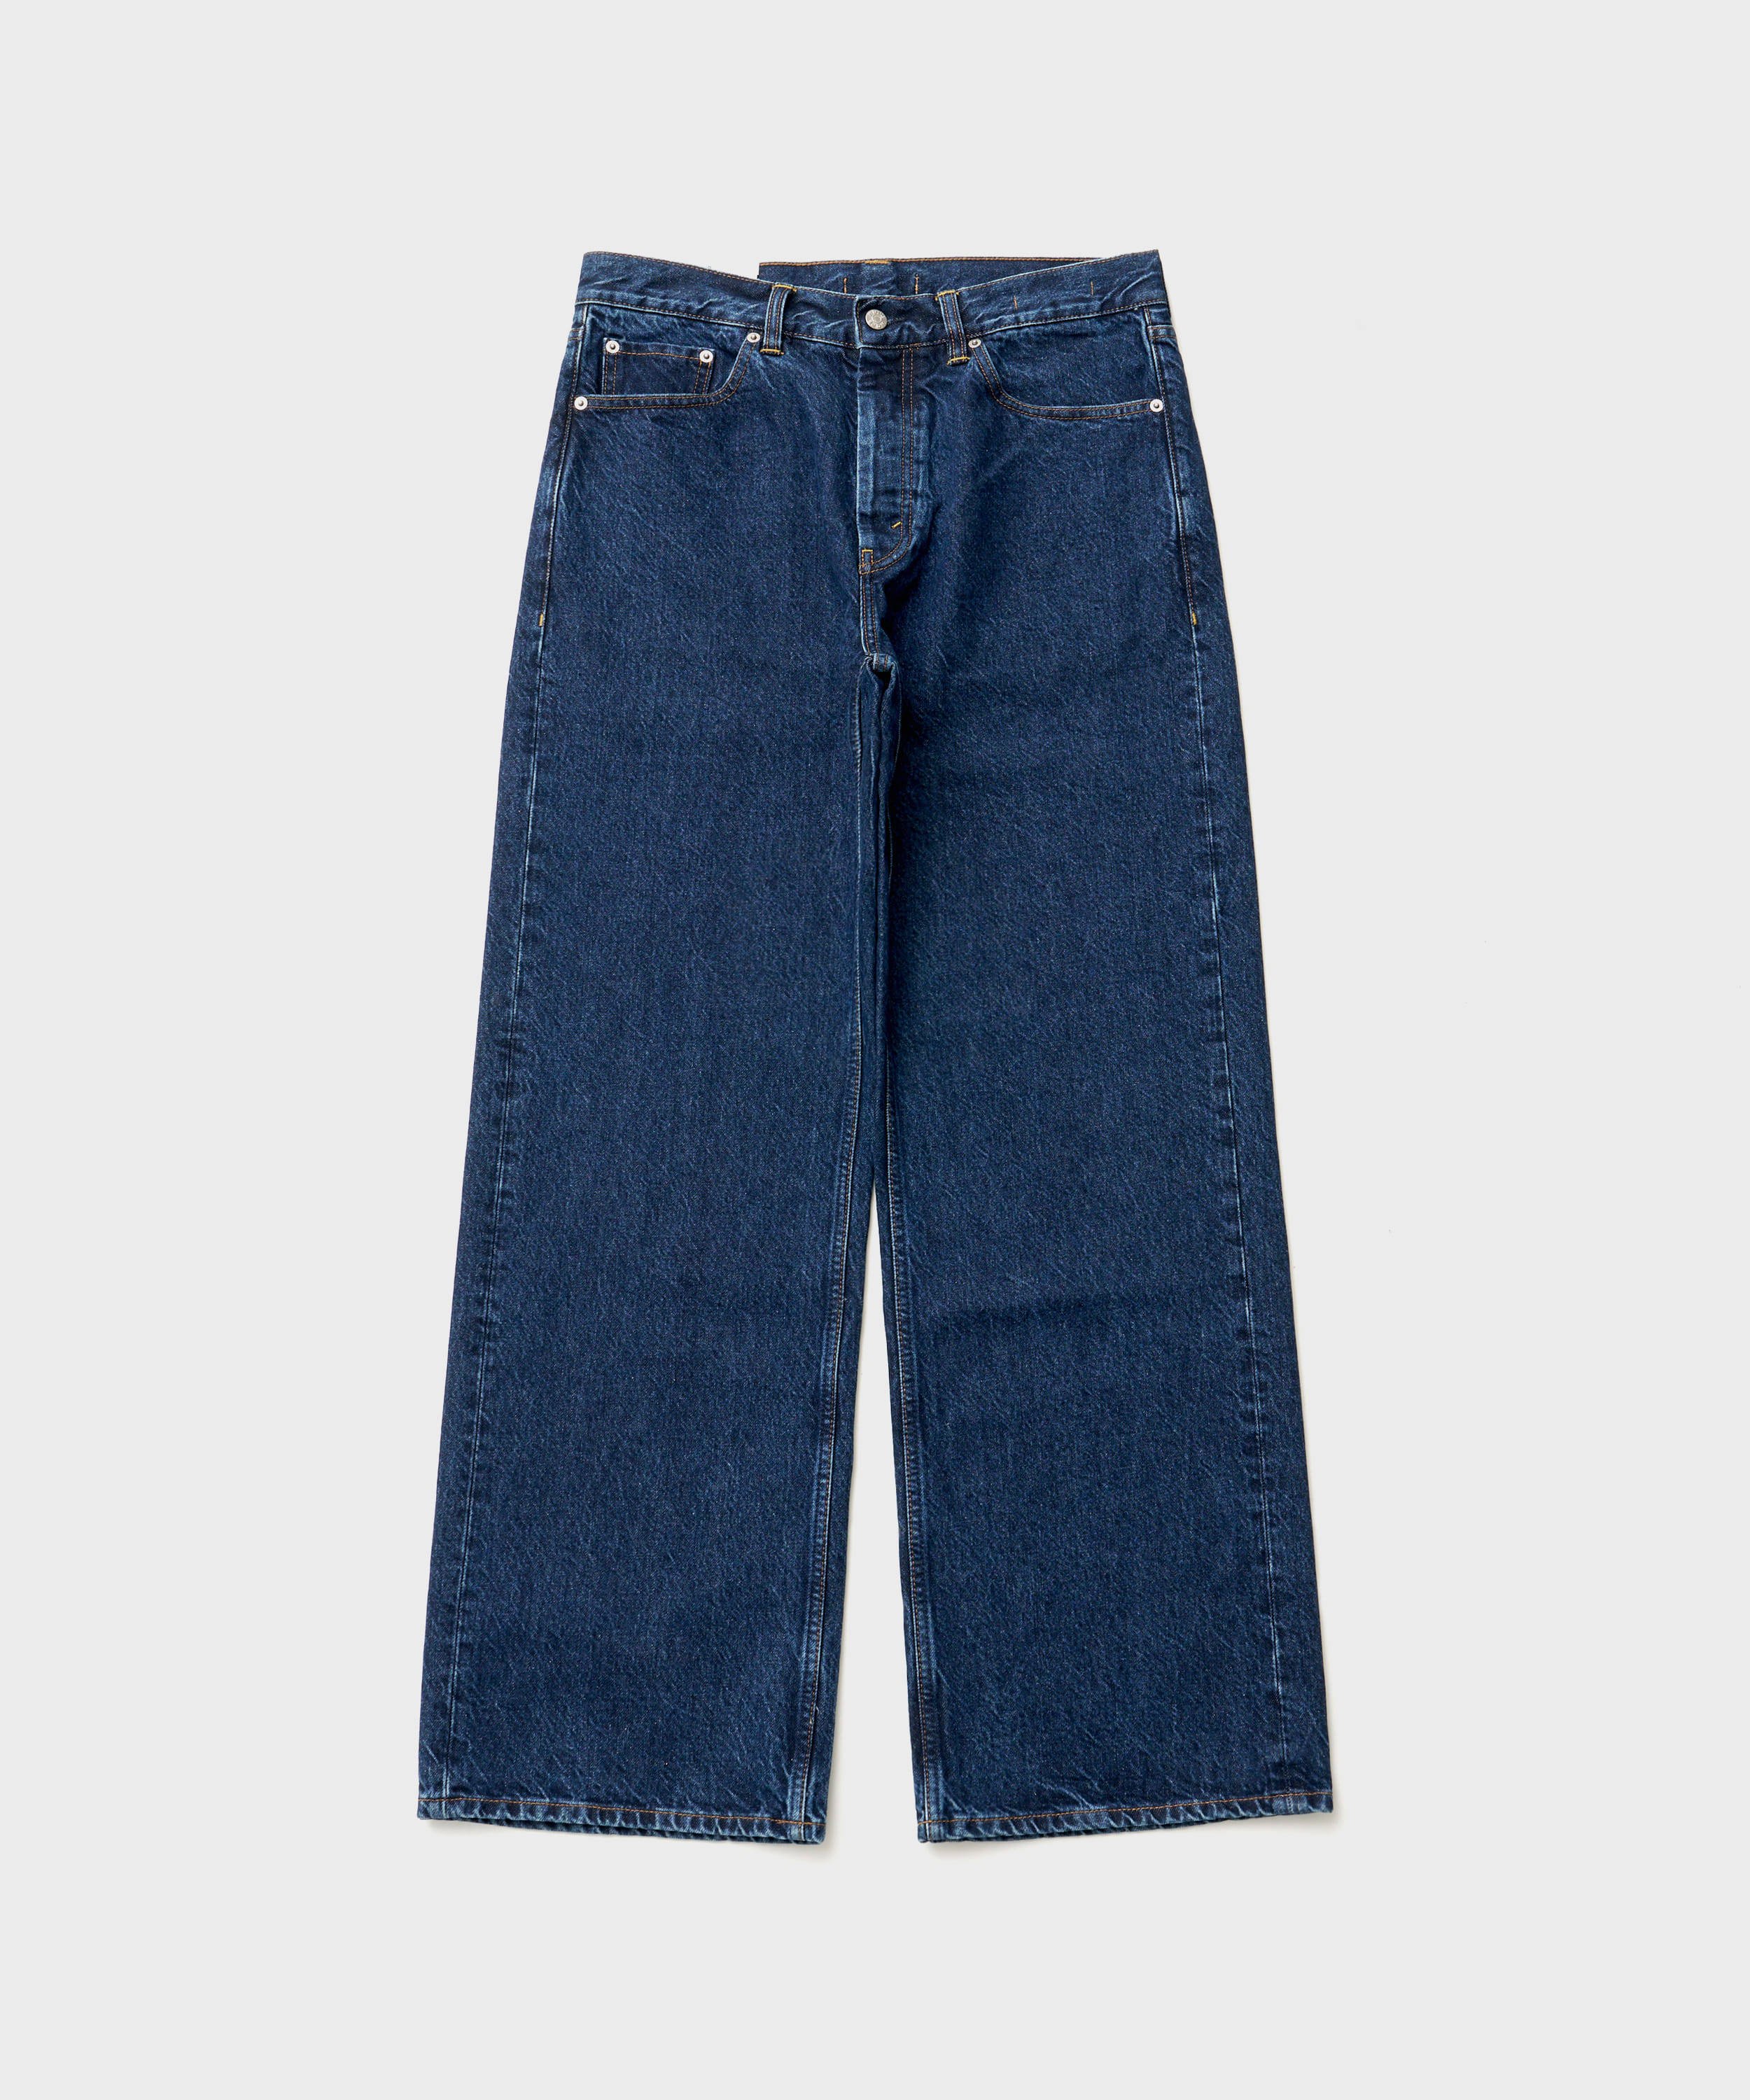 Criss Jeans (DK Indigo Wash)